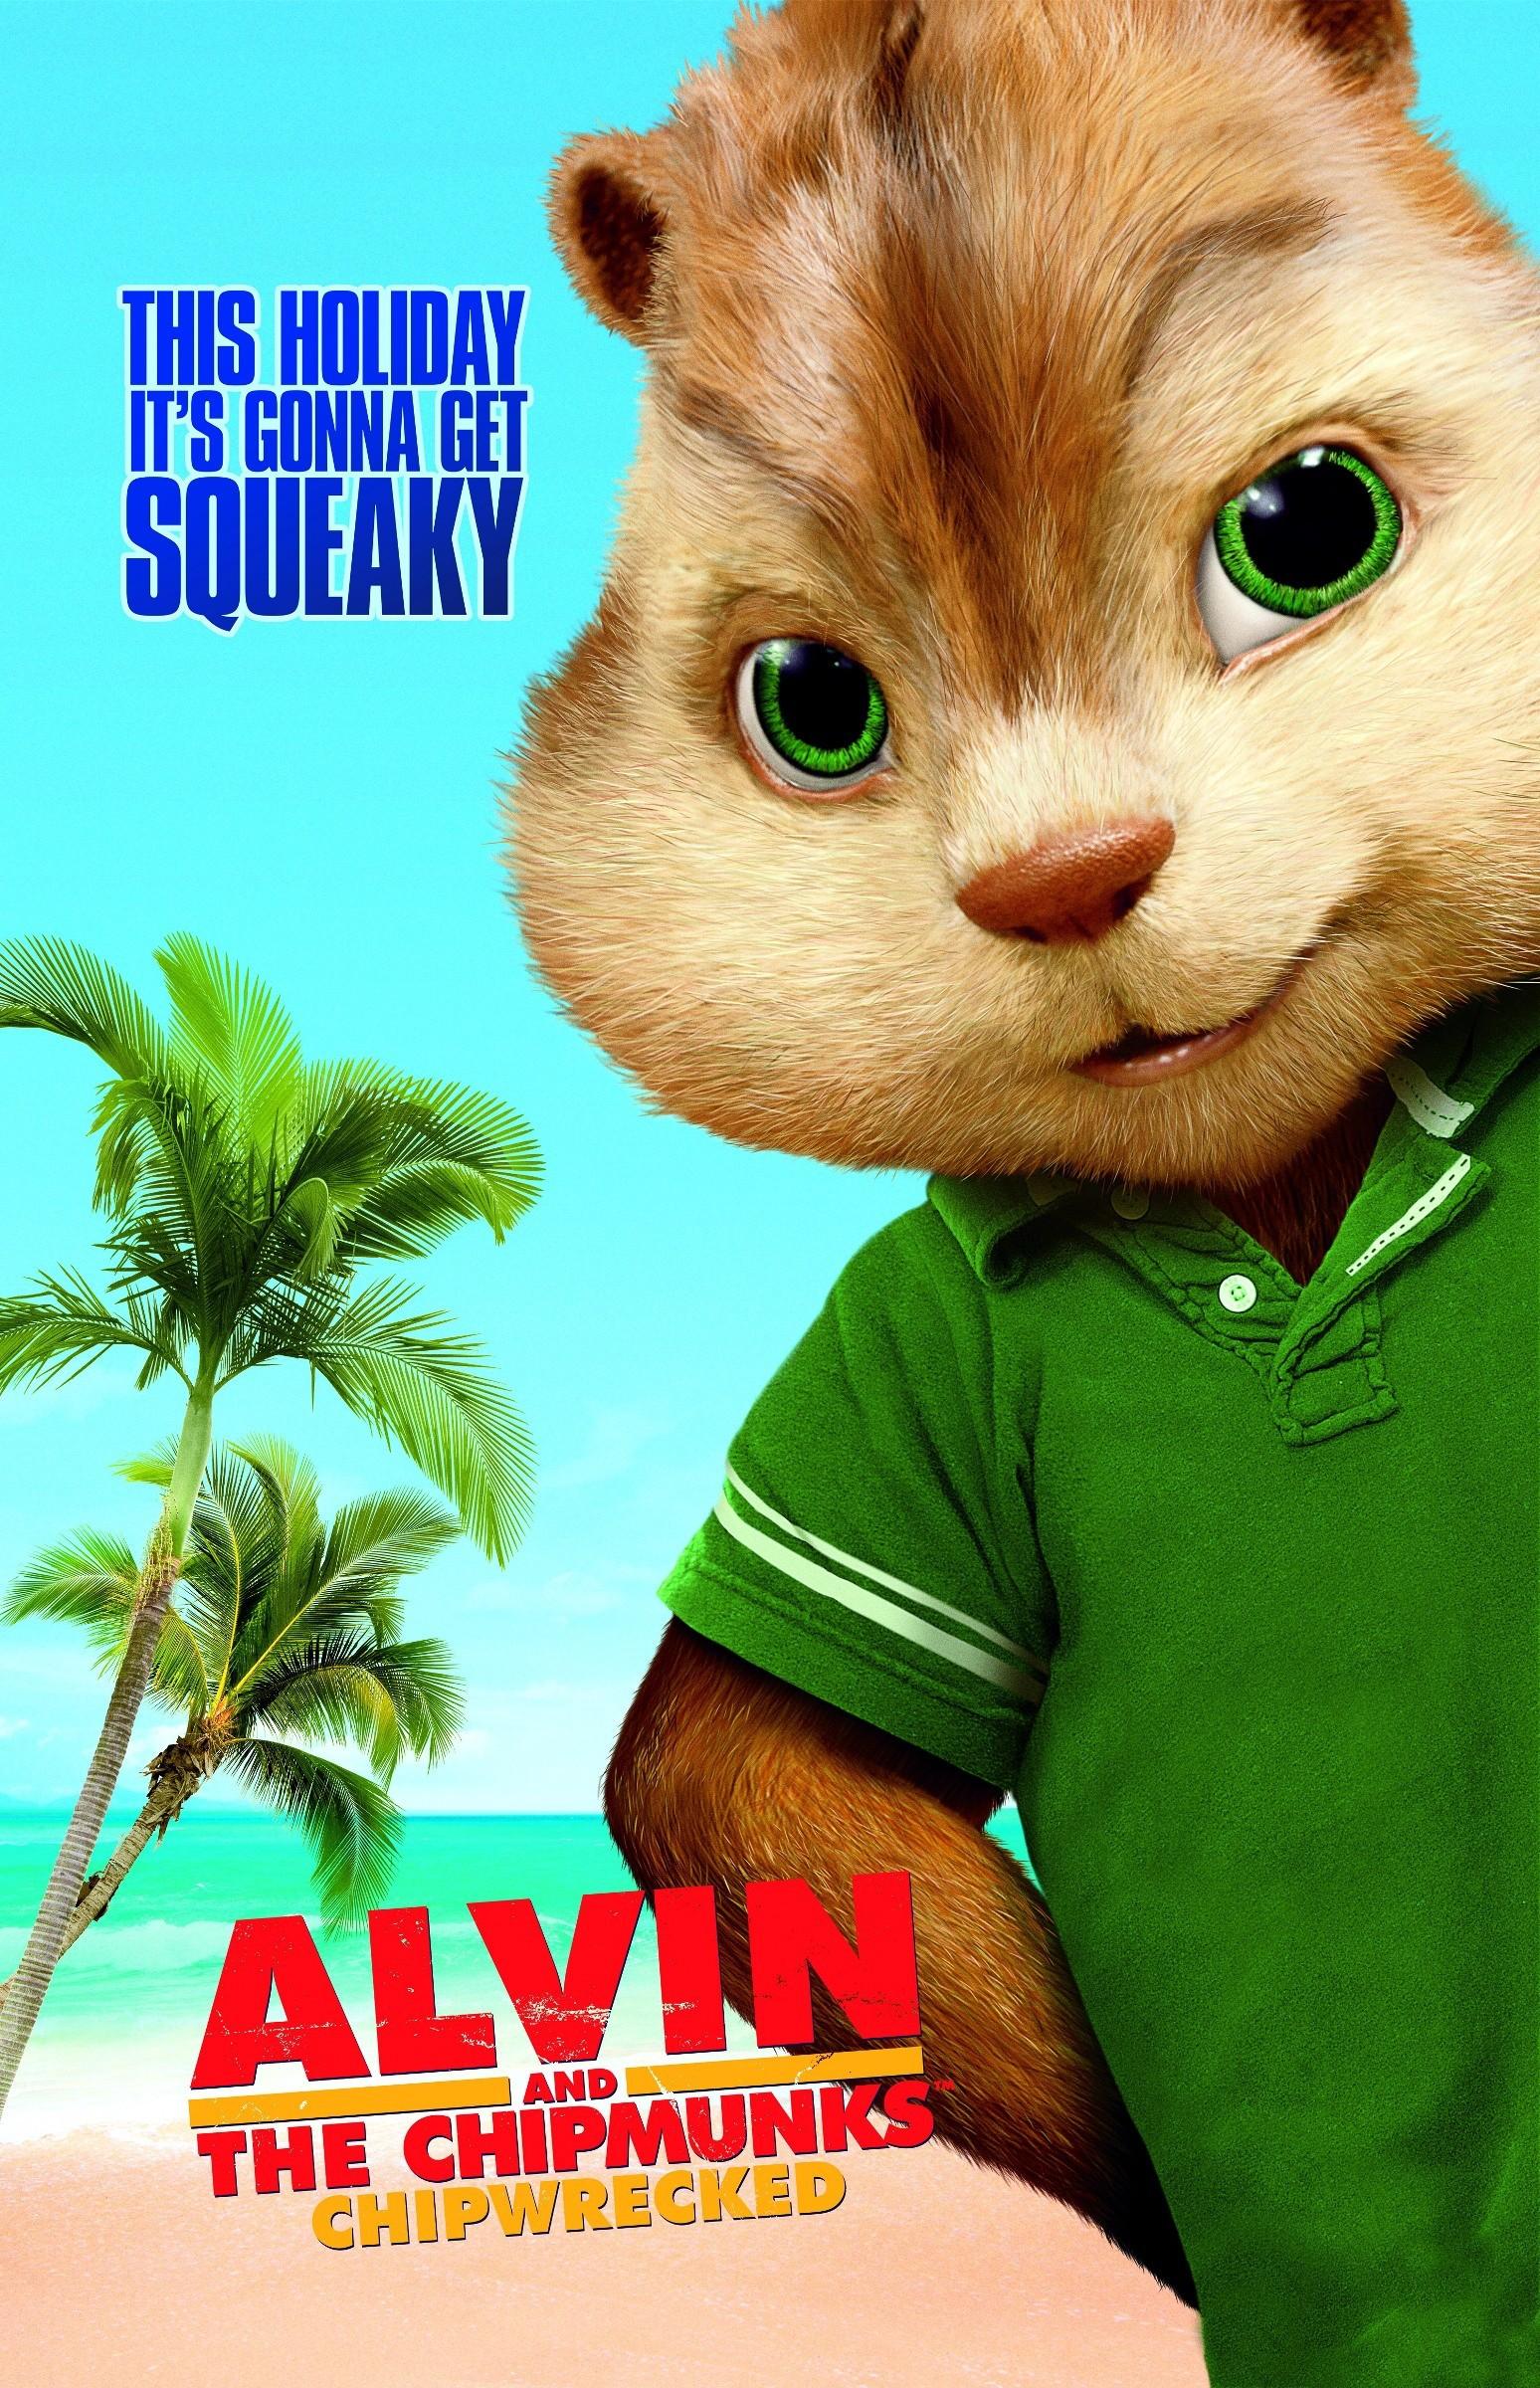 Постер фильма Элвин и Бурундуки 3 | Alvin and the Chipmunks: Chipwrecked